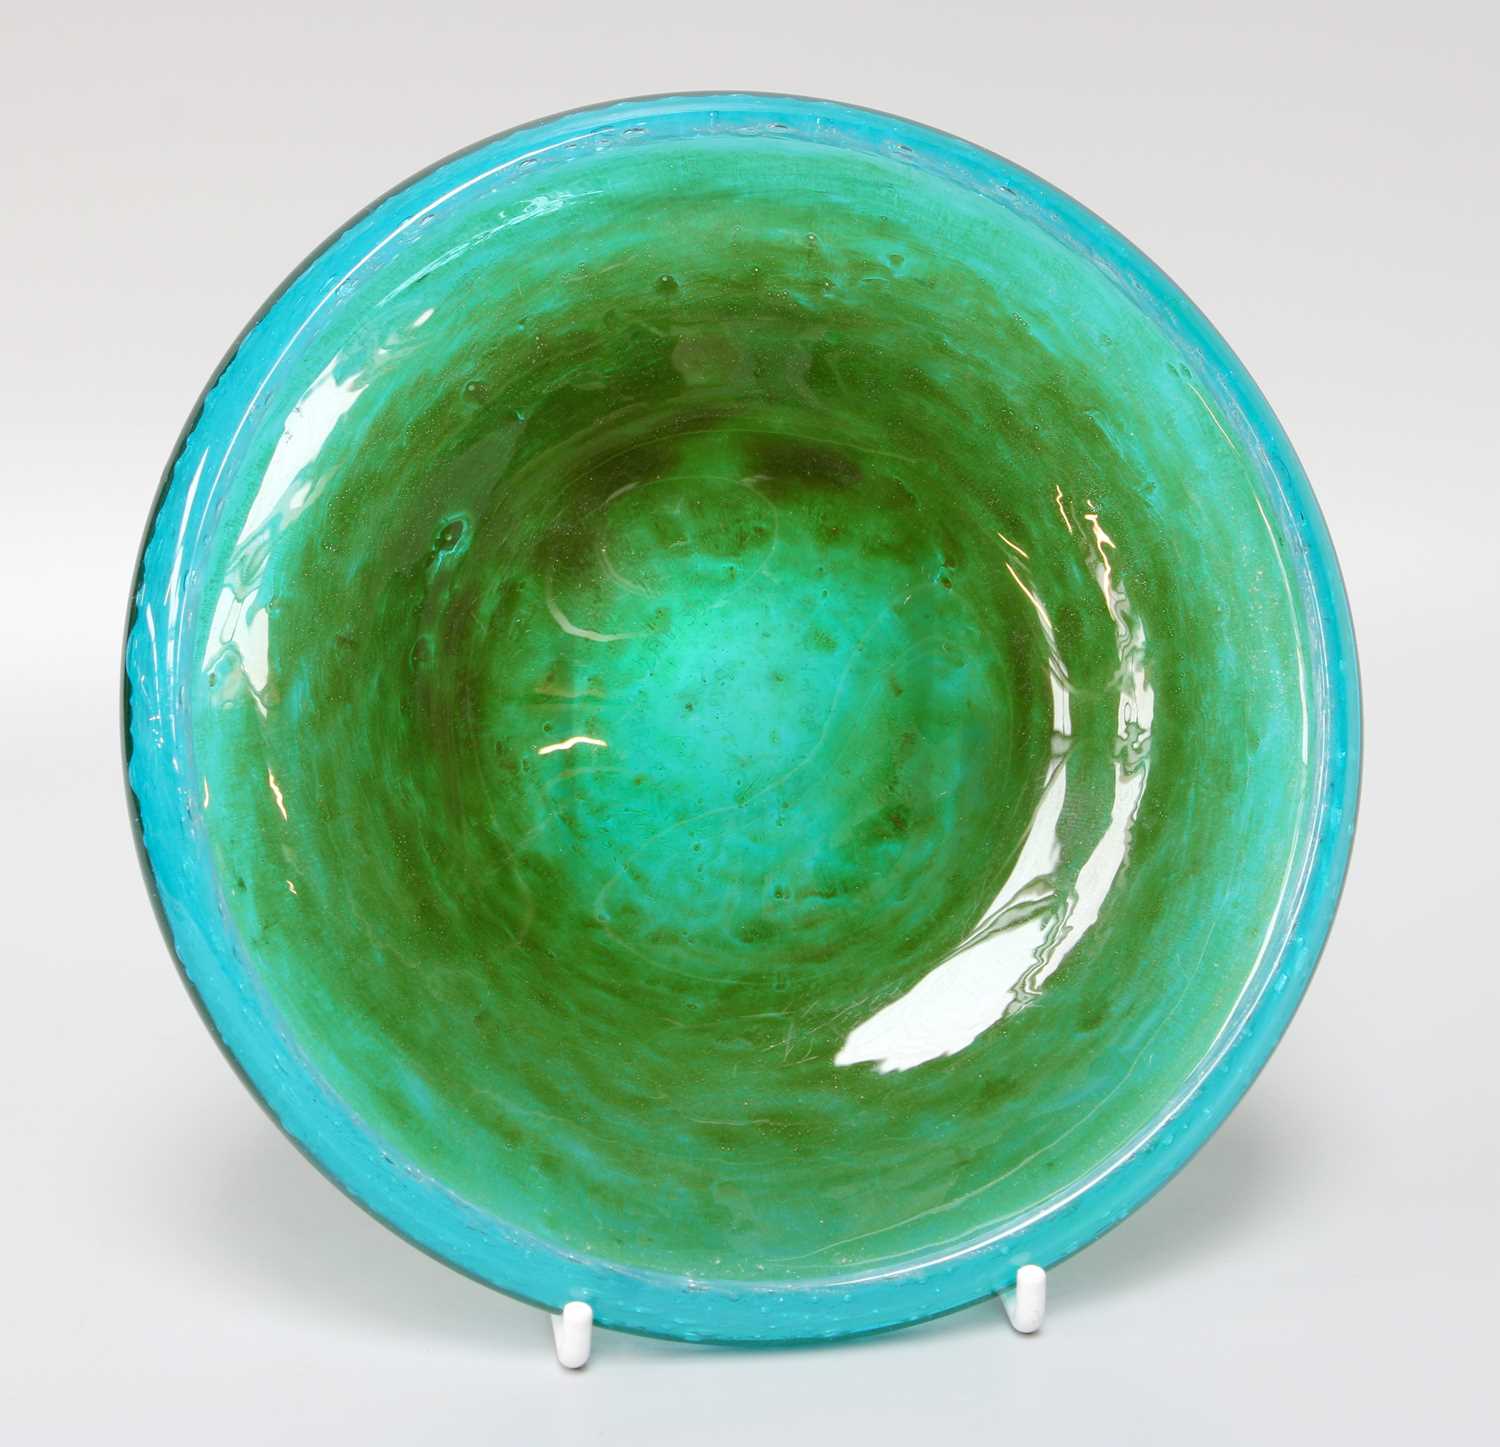 John Orwar Lake for Ekenas Glass, Sweden, A Blue and Green Art Glass Dish, signed, 16.5cm diameter